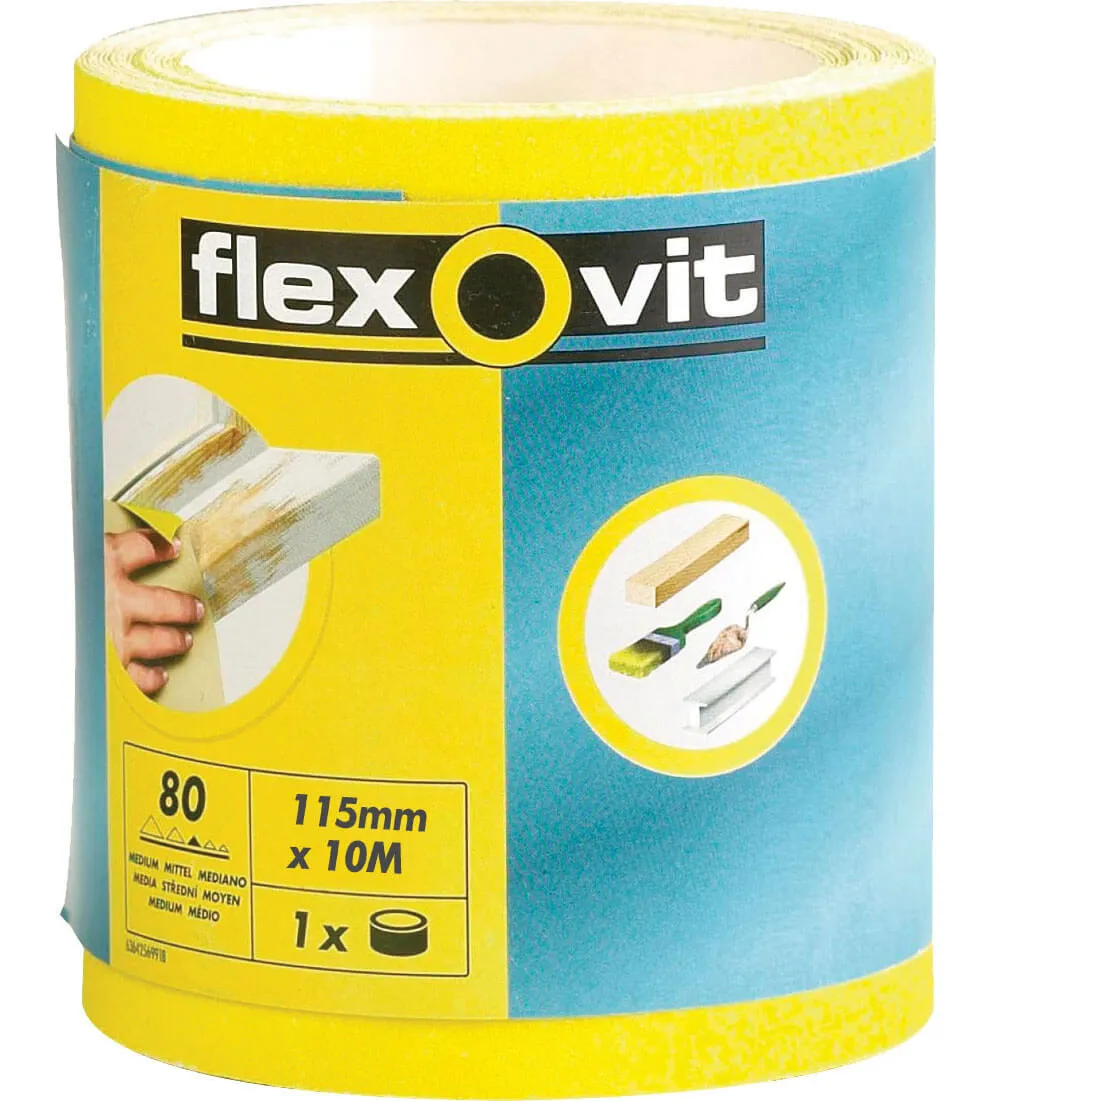 Flexovit High Performance Sanding Roll - 115mm, 10m, 60g